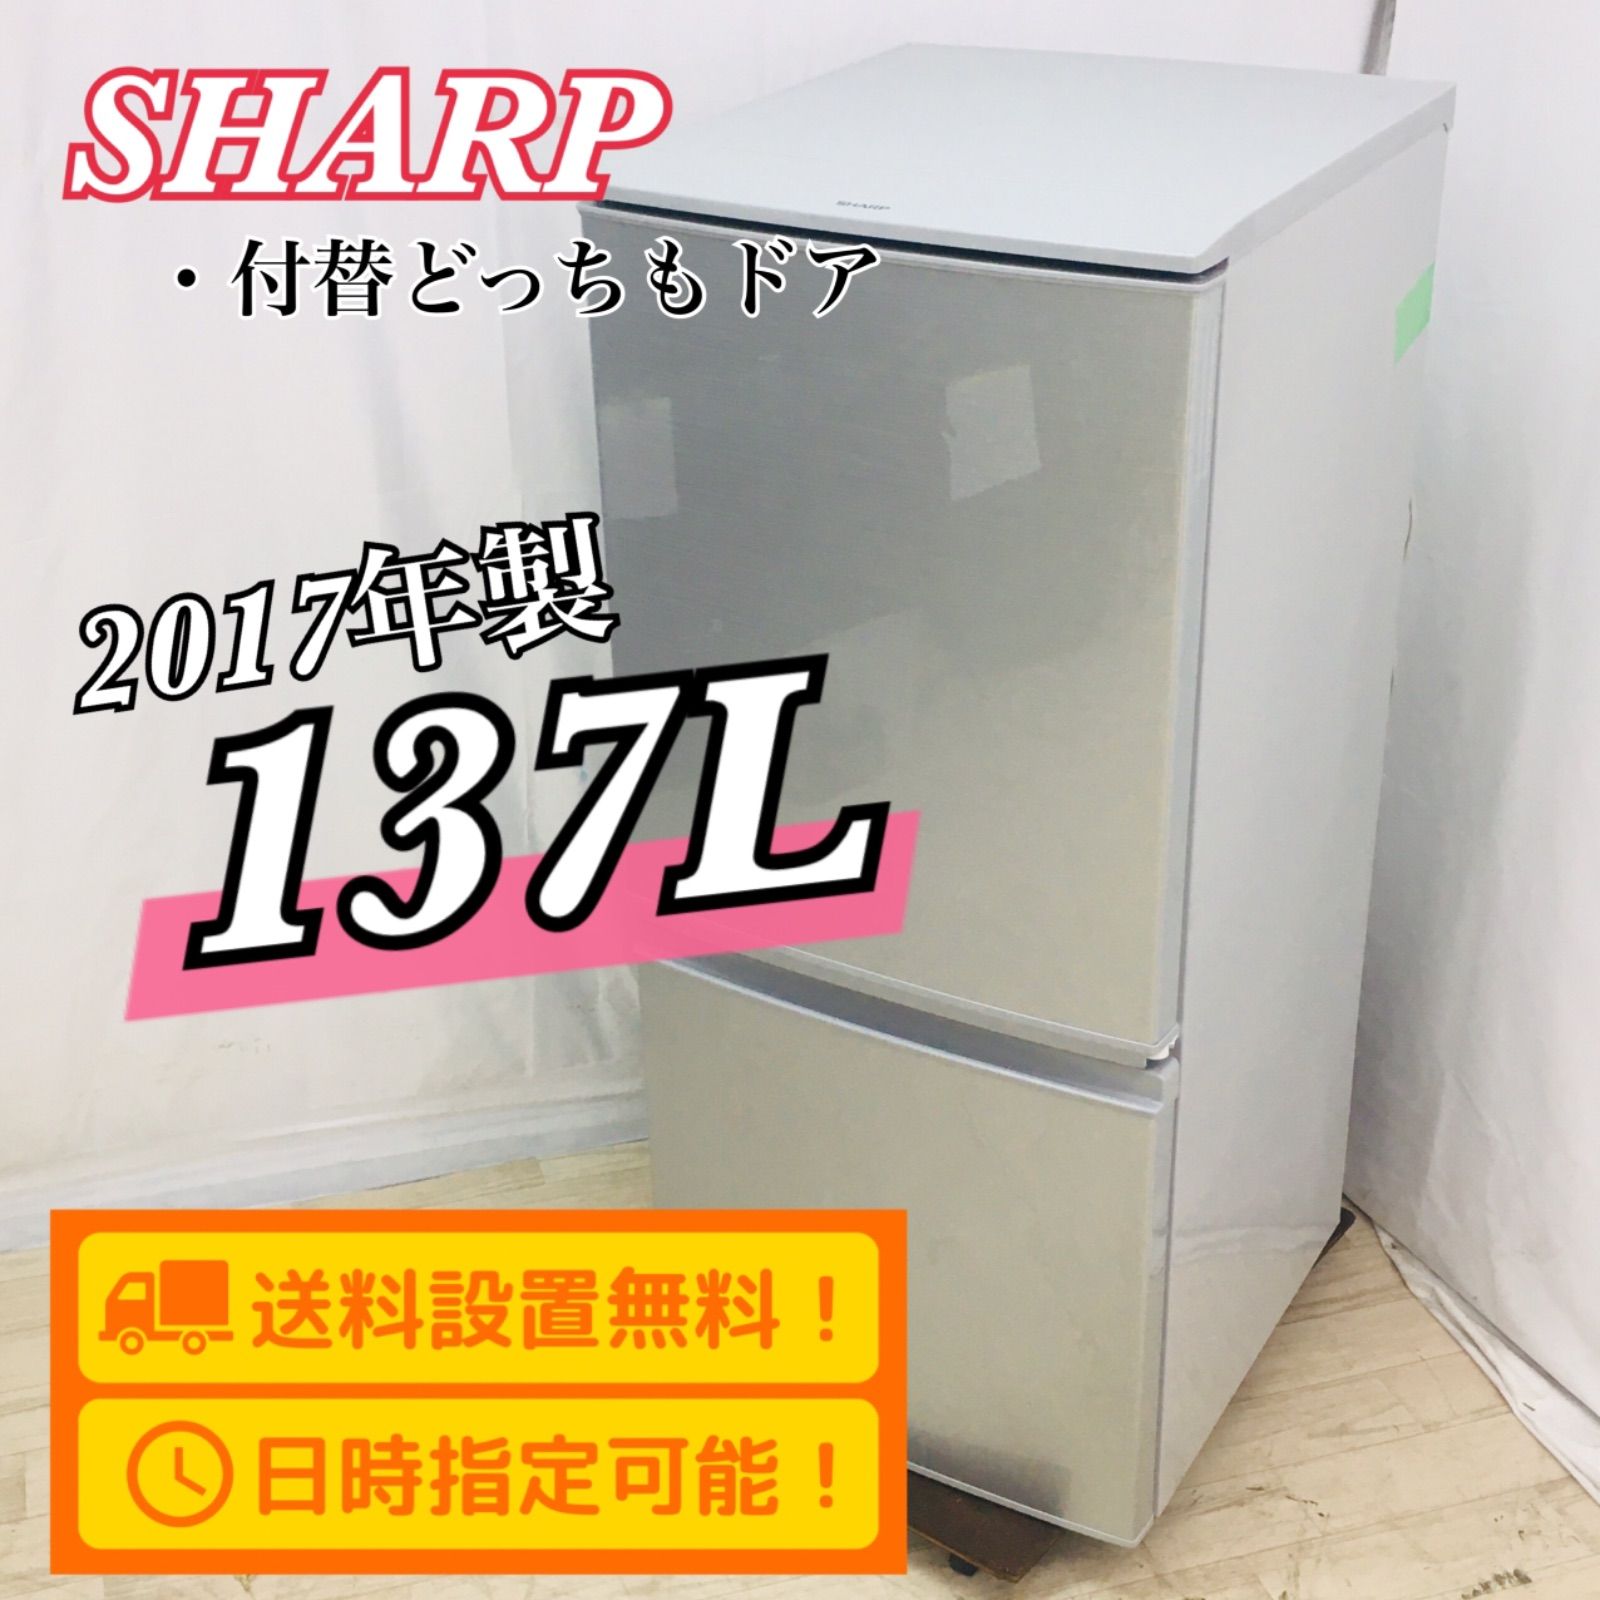 飯田様専用】SHARP シャープ 冷蔵庫 137L 2017年製 SJ-D14C-S 付替え